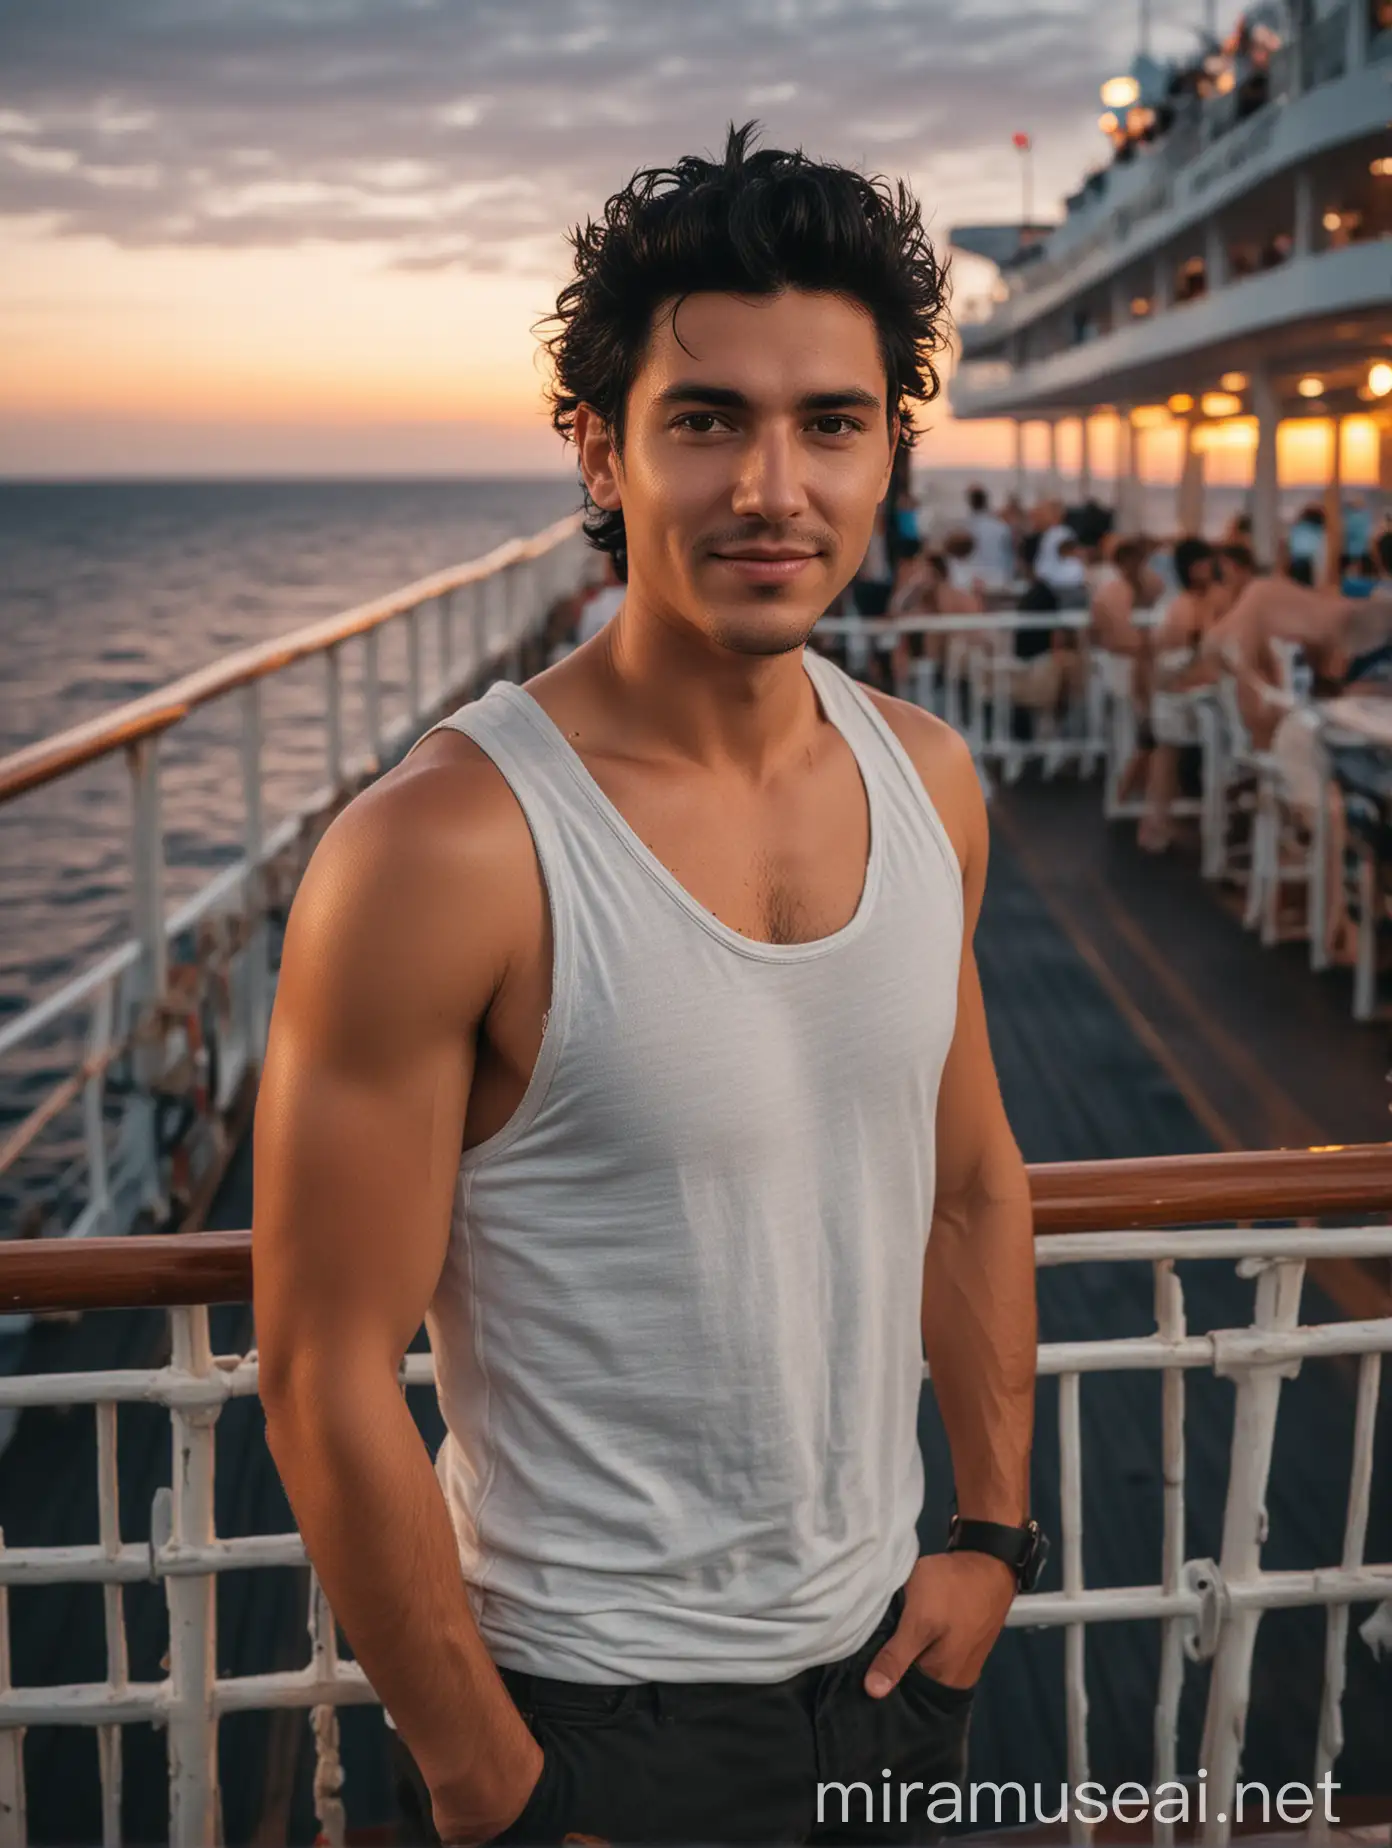 Man Enjoying Sunset on Cruise Ship Deck